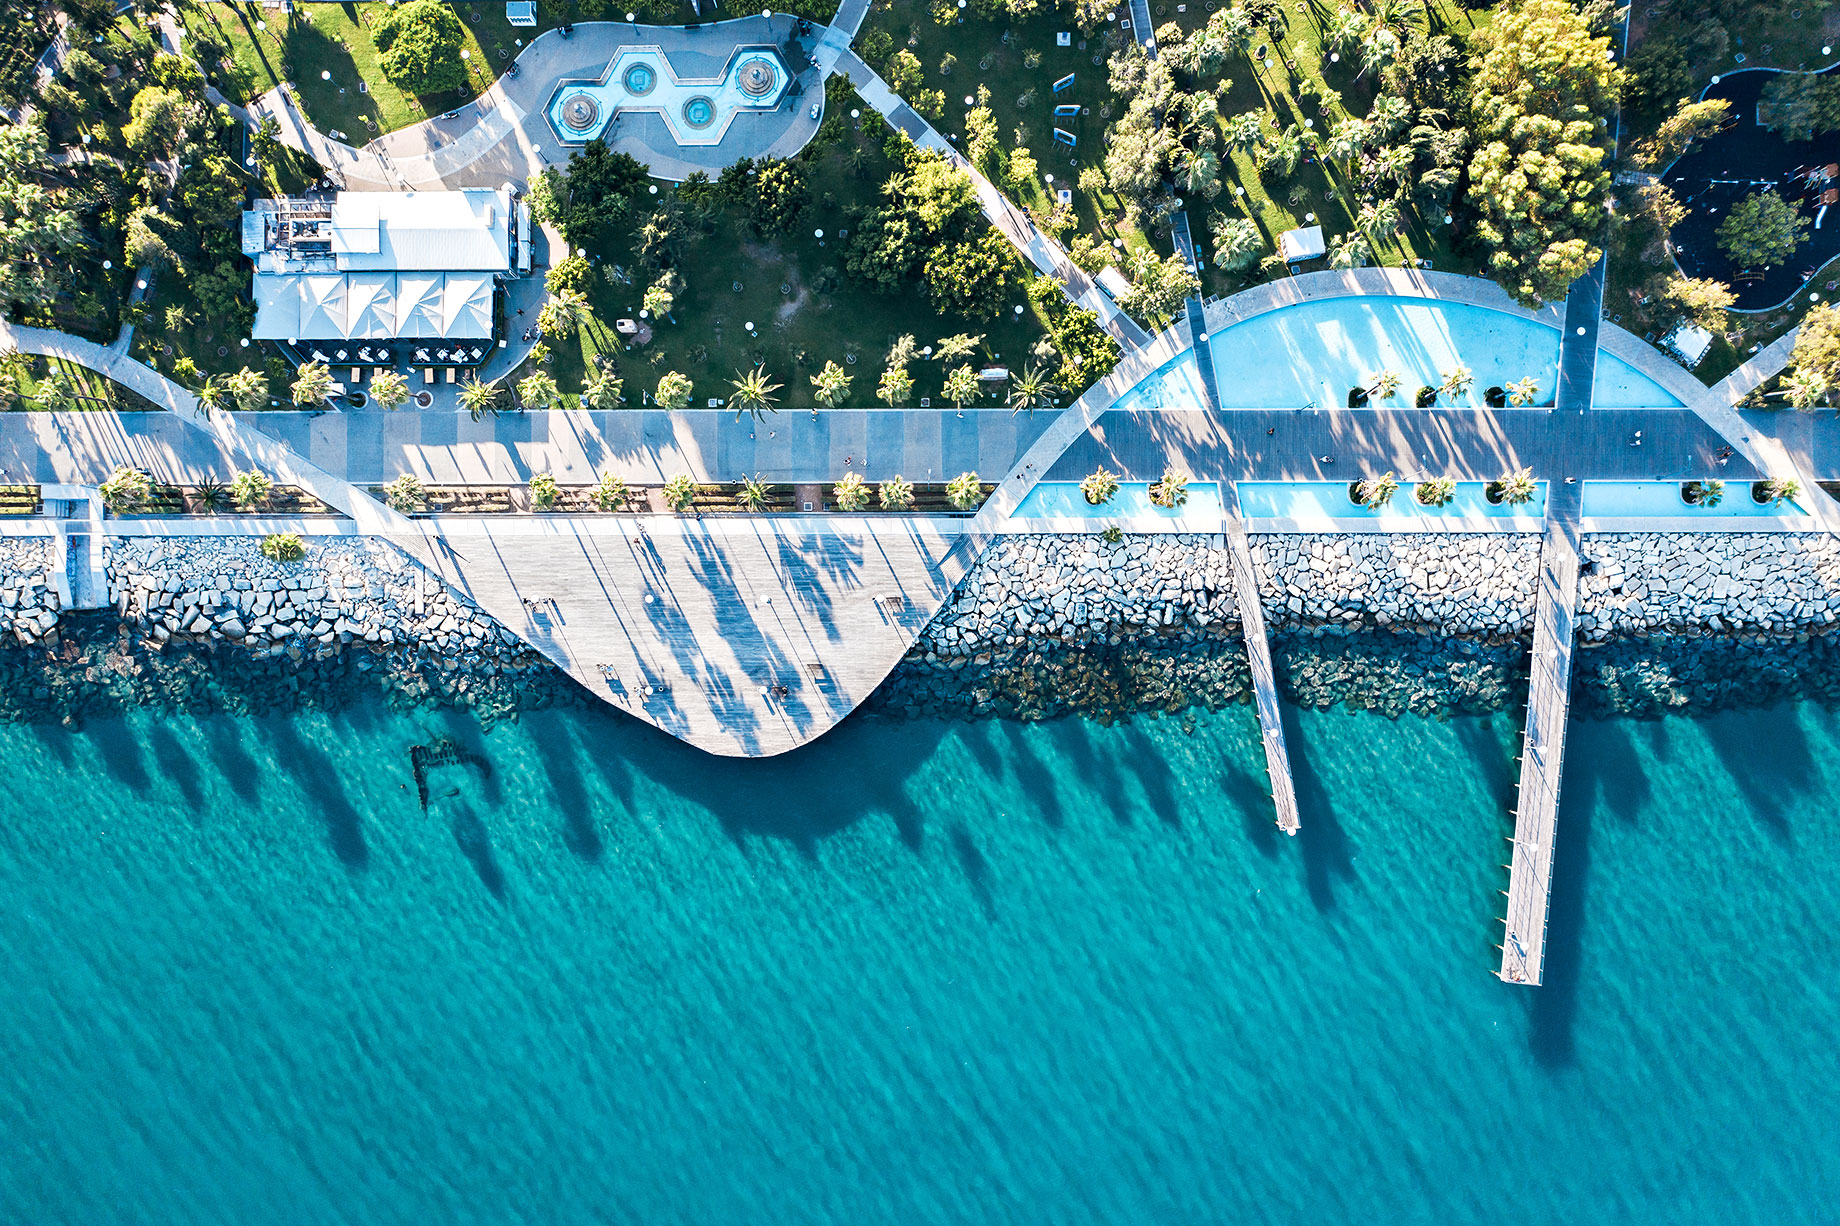 Molos Promenade Park on the Mediterranean Sea - Limassol, Cyprus